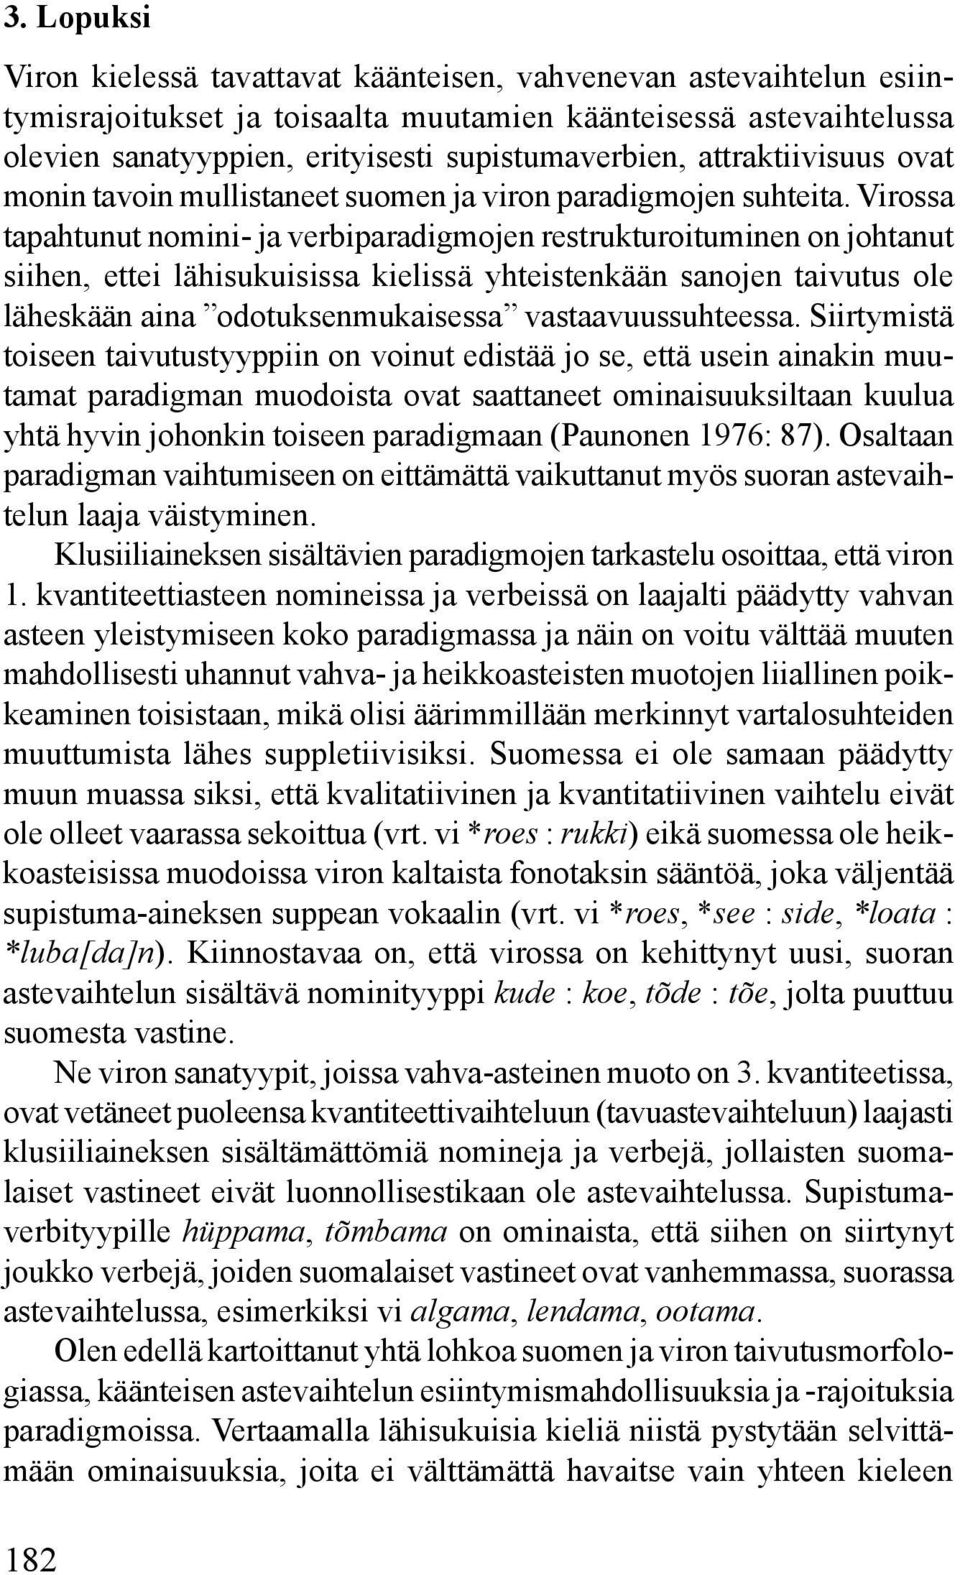 Virossa tapahtunut nomini- ja verbiparadigmojen restrukturoituminen on johtanut siihen, ettei lähisukuisissa kielissä yhteistenkään sanojen taivutus ole läheskään aina odotuksenmukaisessa